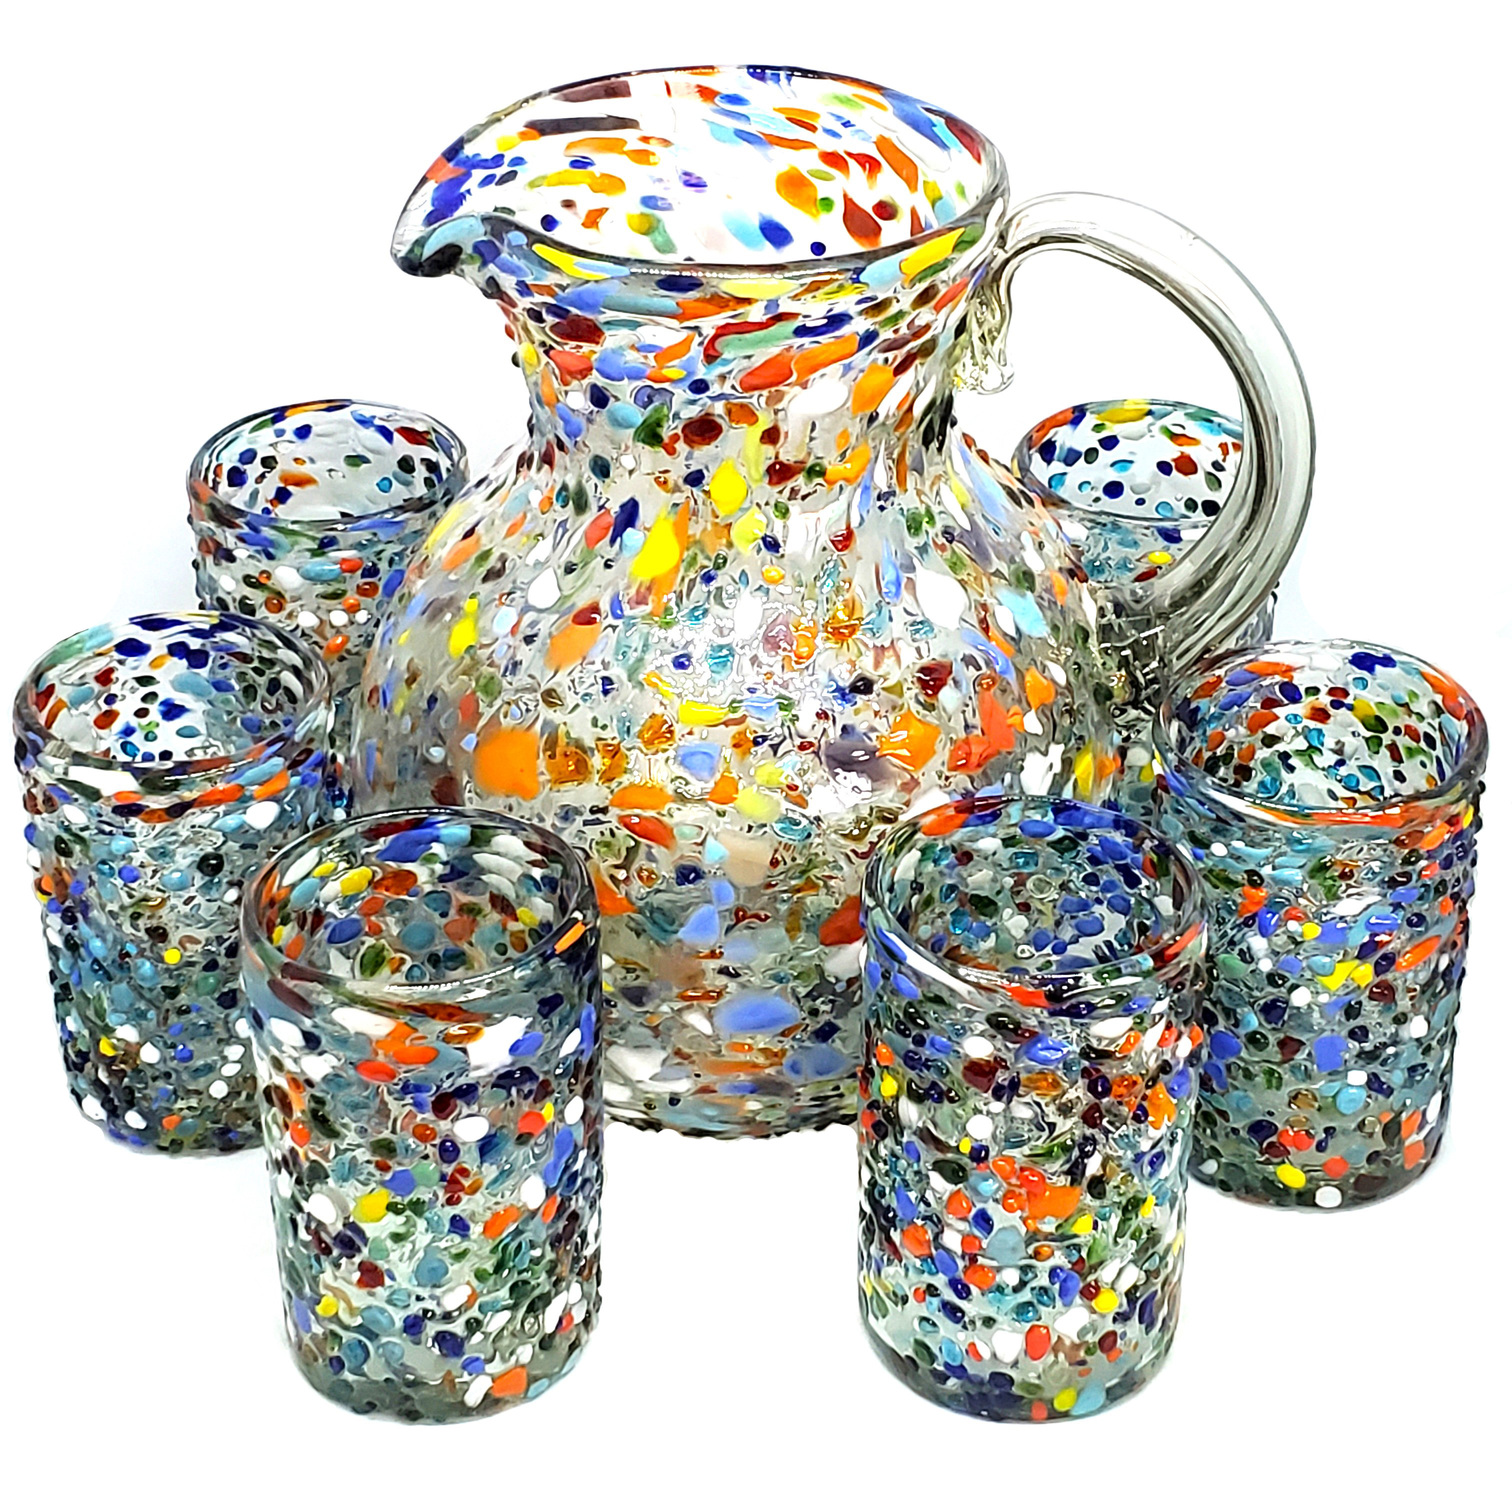 Novedades / Juego de jarra y 6 vasos grandes 'Confeti granizado' / Cada juego de jarra y vasos 'Confeti granizado' es una obra de arte por si mismo. Est�n decorados con cientos de peque�as piedras de vidrio multicolor, haciendo cada juego �nico.